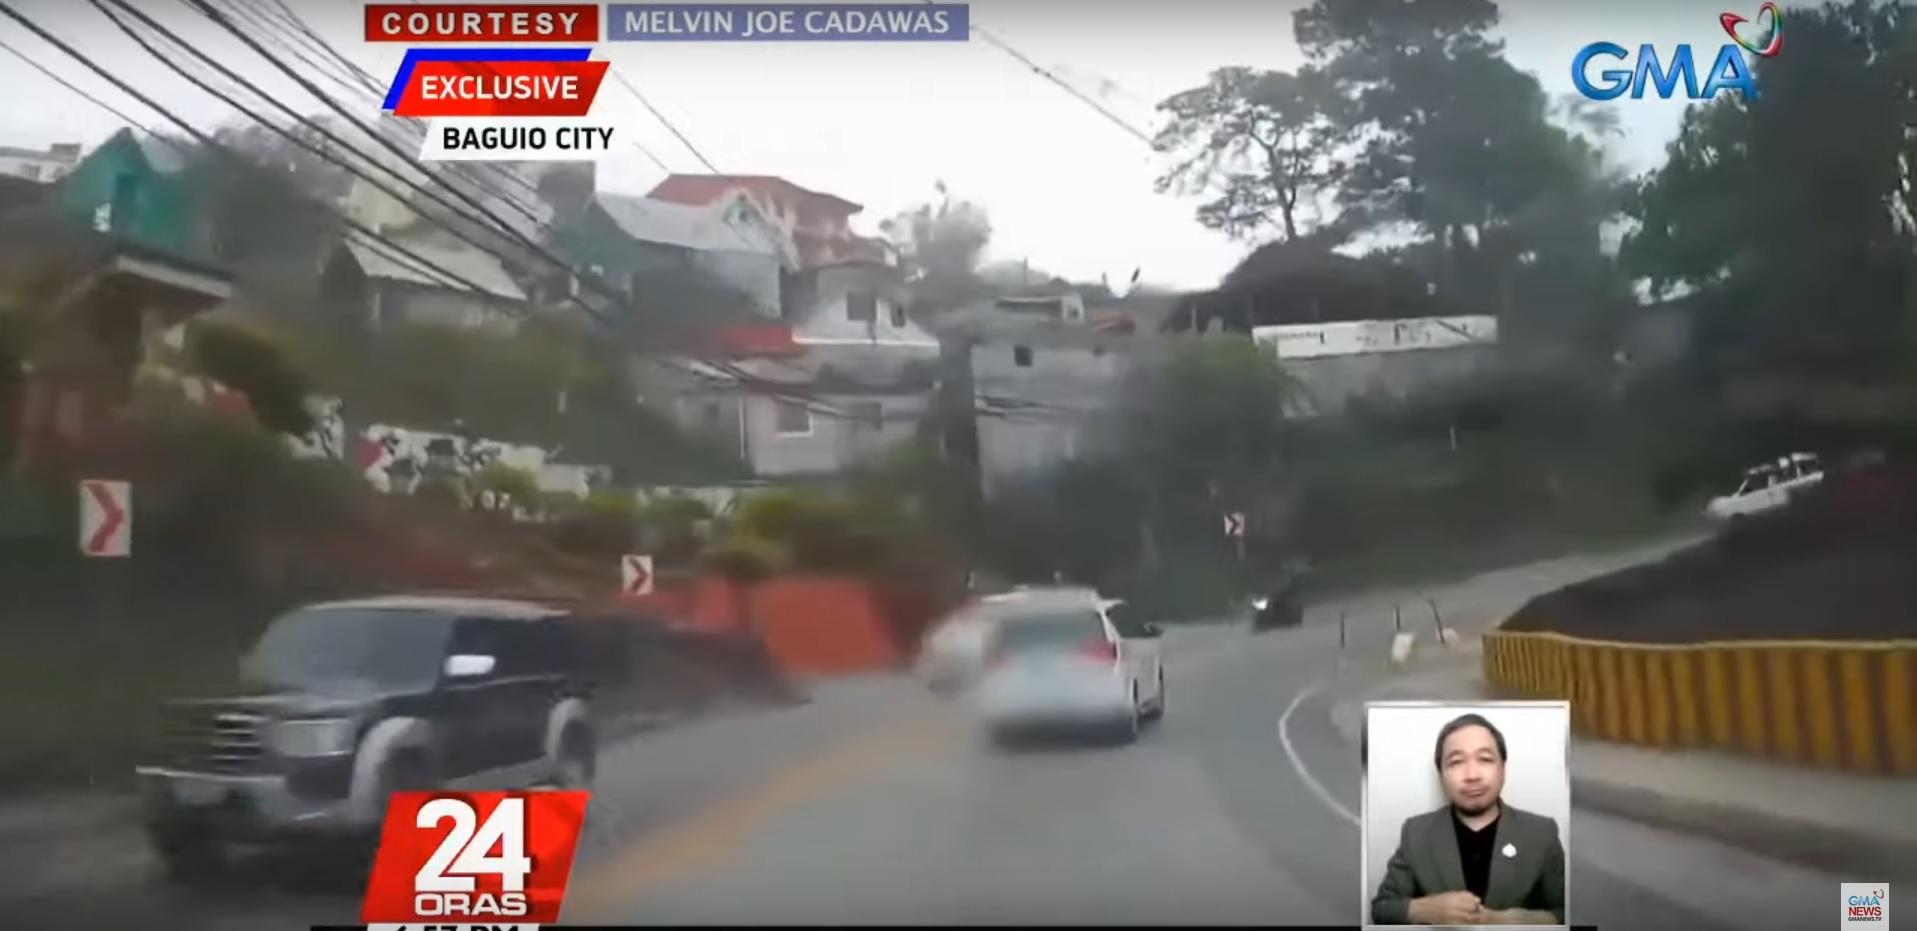 Bocah satu tahun jatuh dari taksi yang bergerak di jalan zigzag Baguio